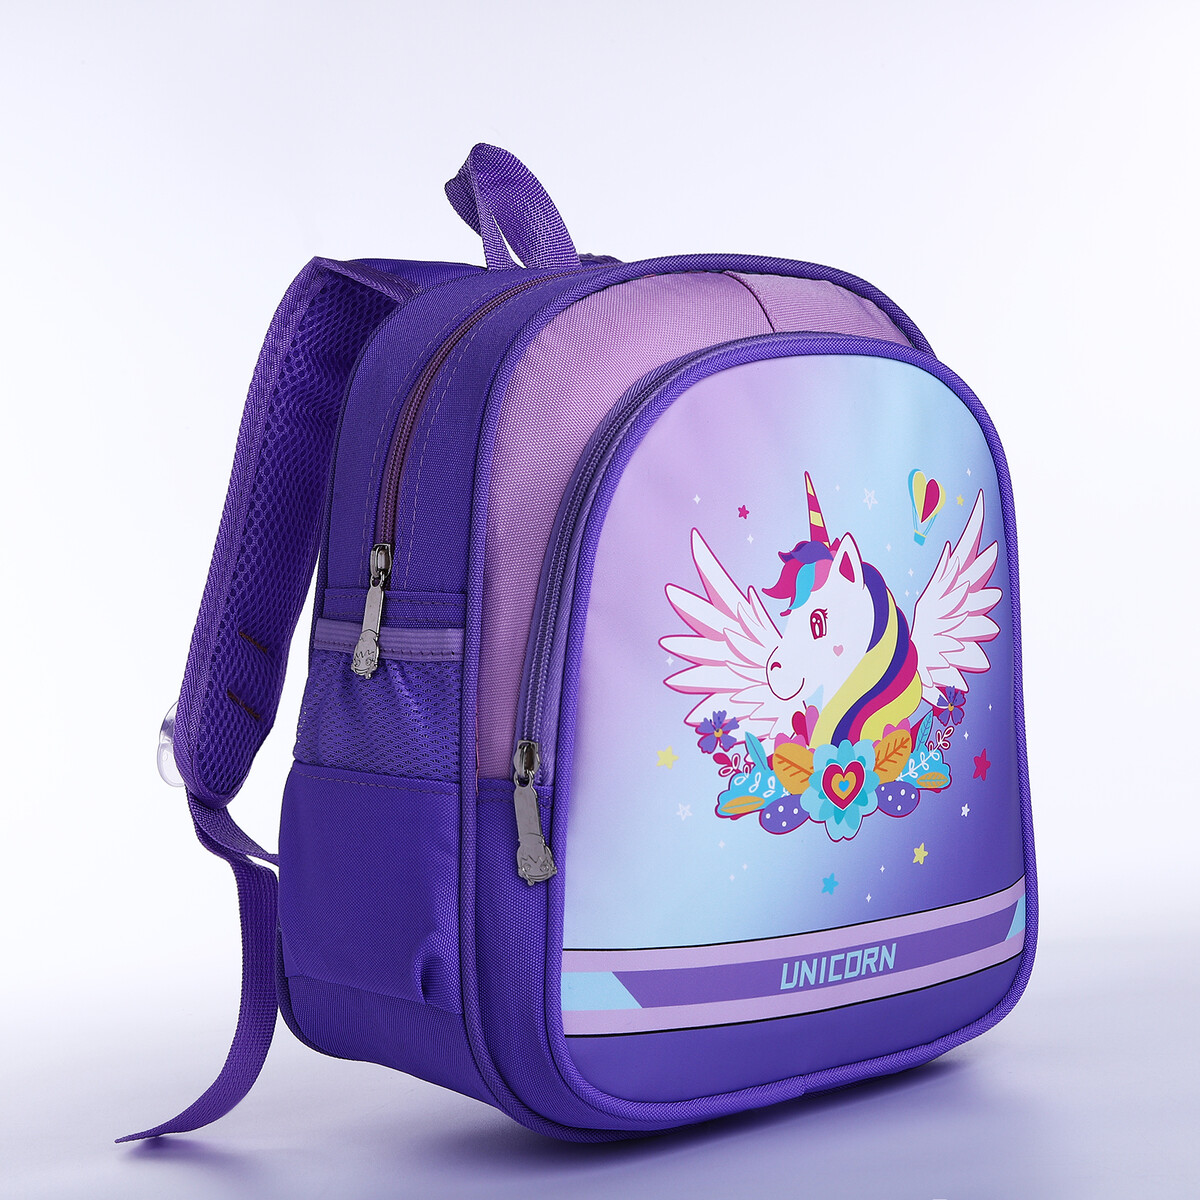 Рюкзак детский на молнии, 3 наружных кармана, цвет фиолетовый рюкзак детский carl oscar pack n snack cow фиолетовый 109402